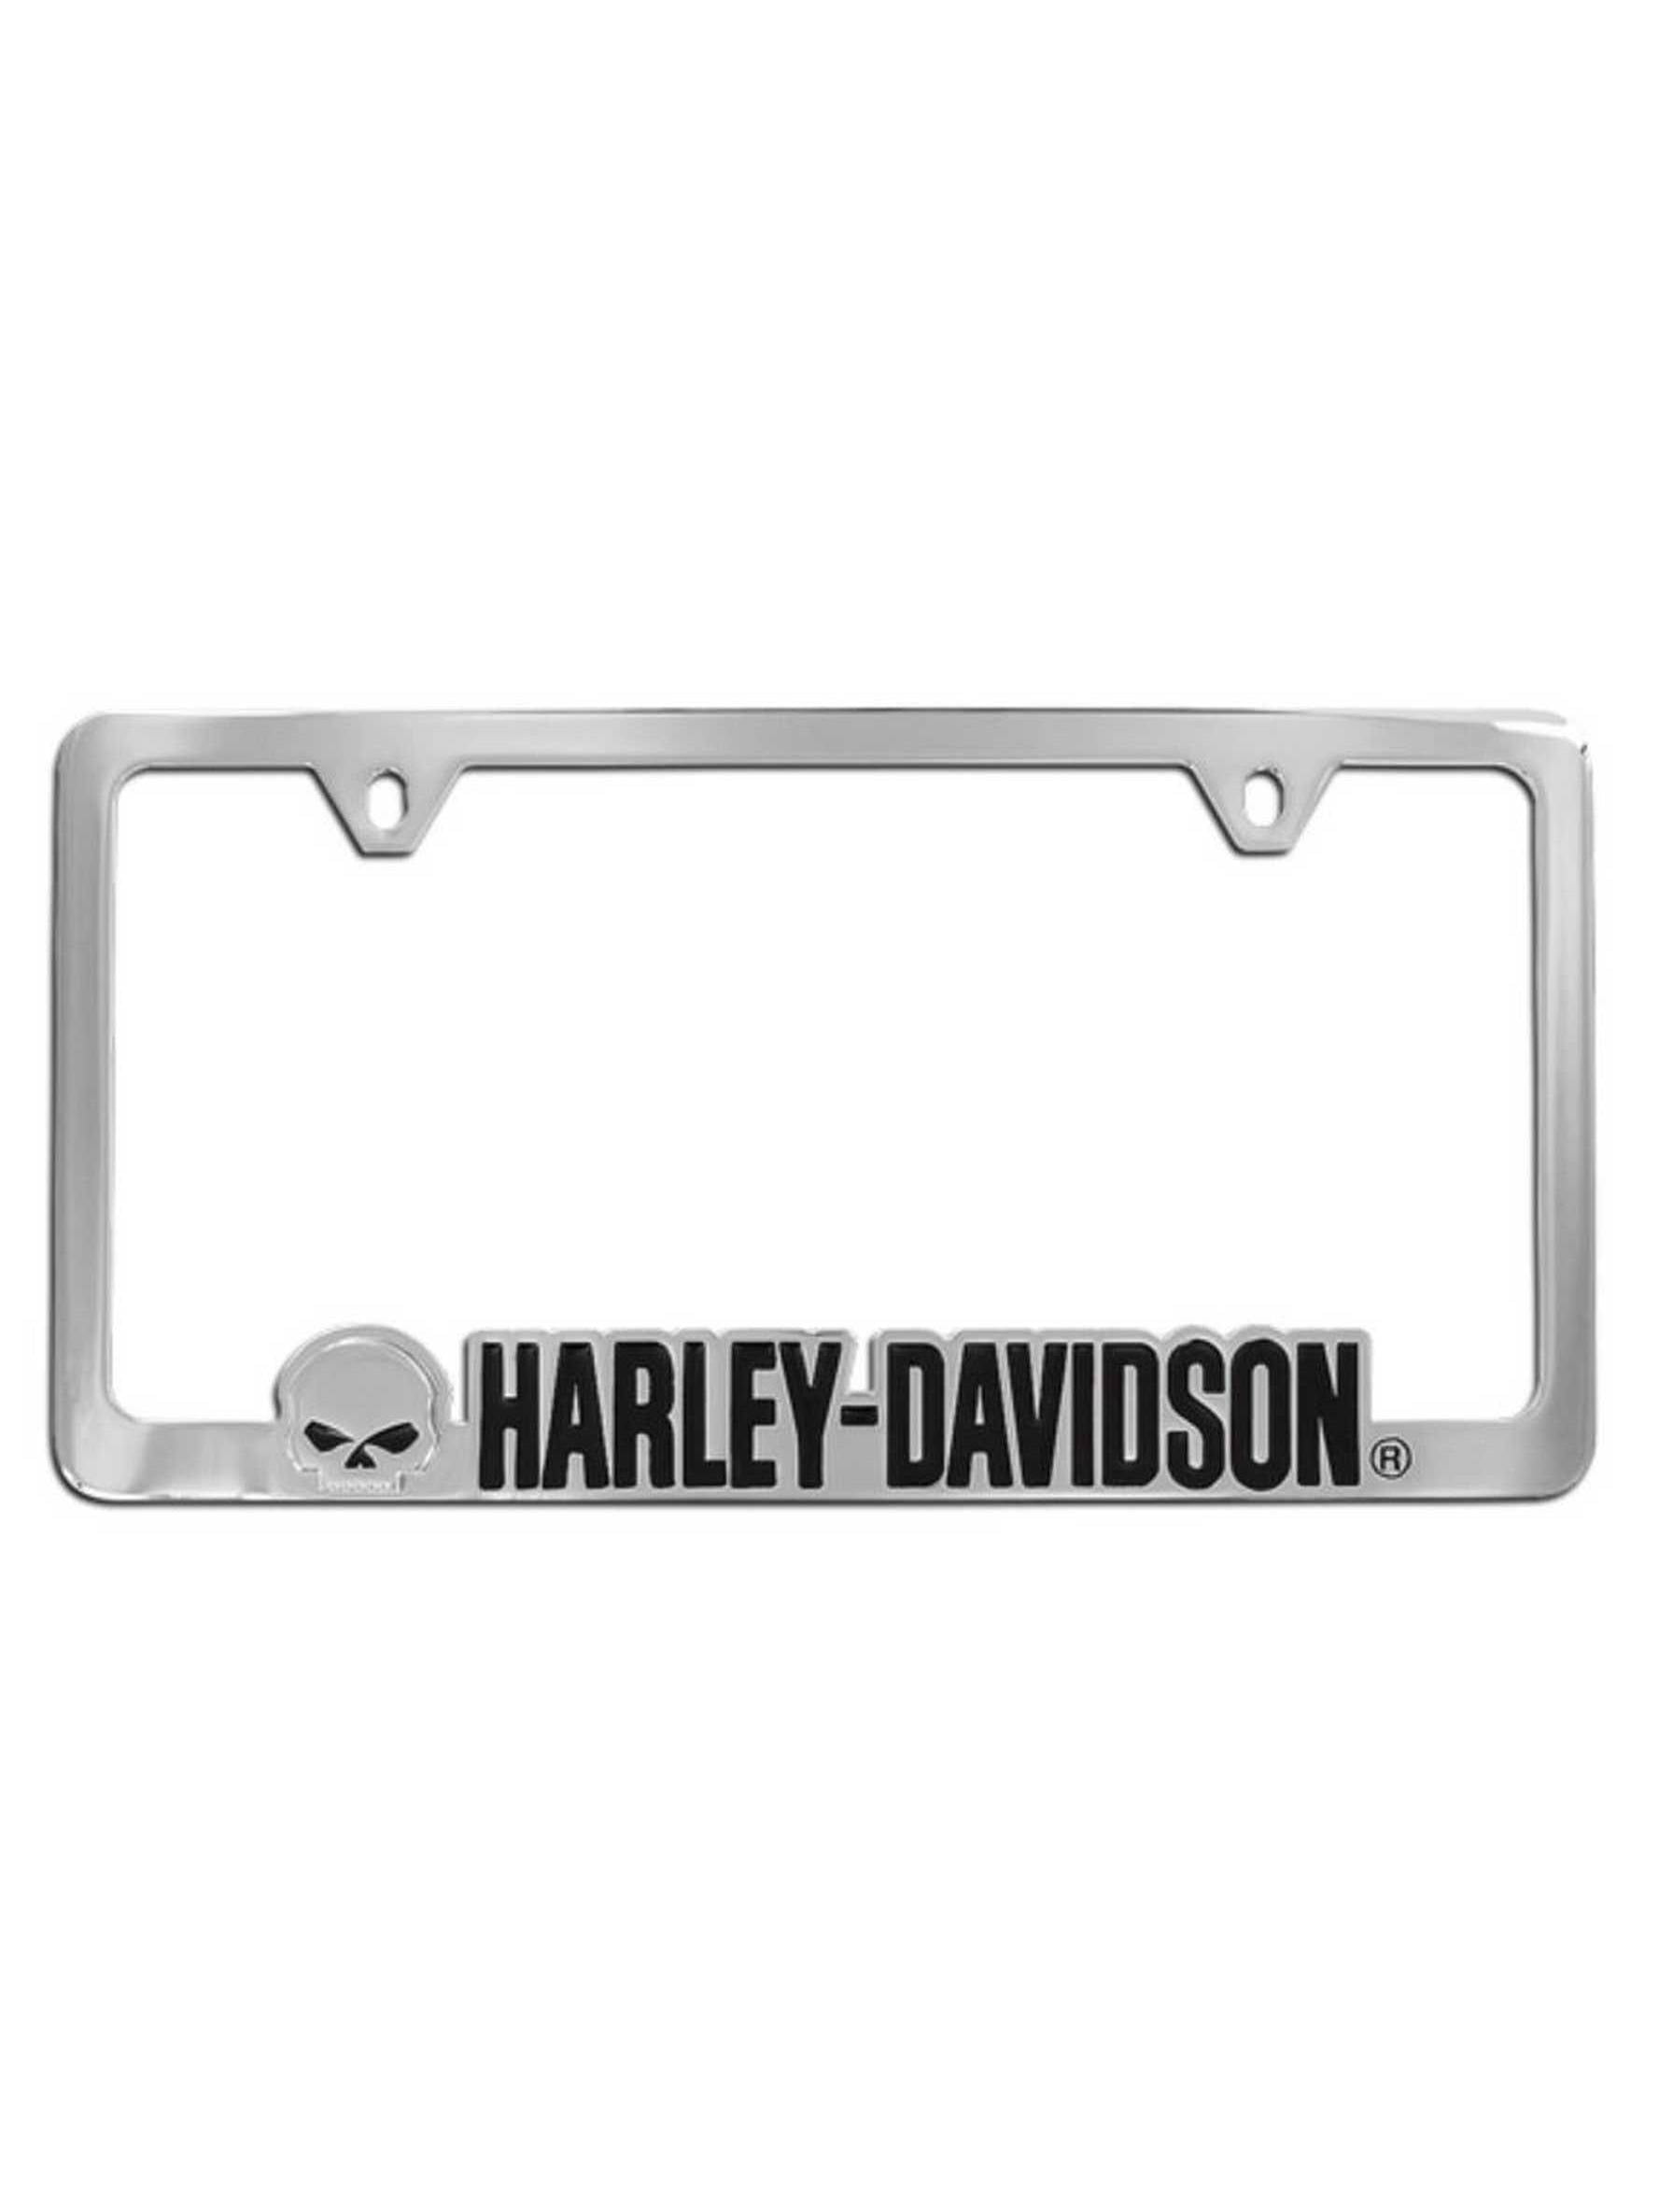 Harley-Davidson Chrome Metal License Plate Frame for Cars & Trucks